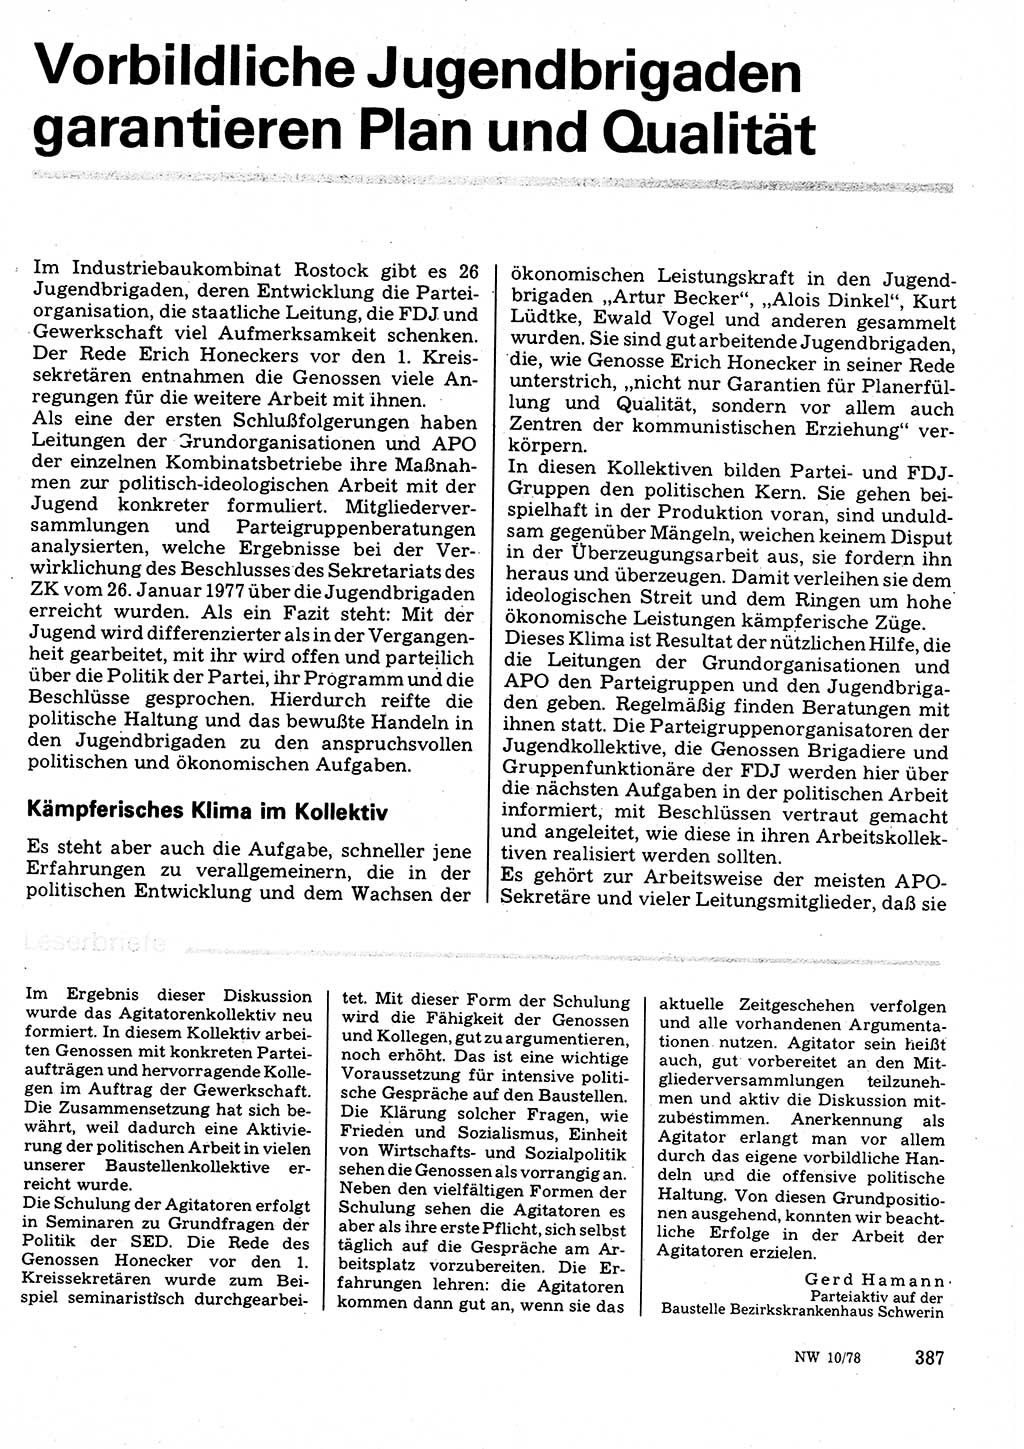 Neuer Weg (NW), Organ des Zentralkomitees (ZK) der SED (Sozialistische Einheitspartei Deutschlands) für Fragen des Parteilebens, 33. Jahrgang [Deutsche Demokratische Republik (DDR)] 1978, Seite 387 (NW ZK SED DDR 1978, S. 387)